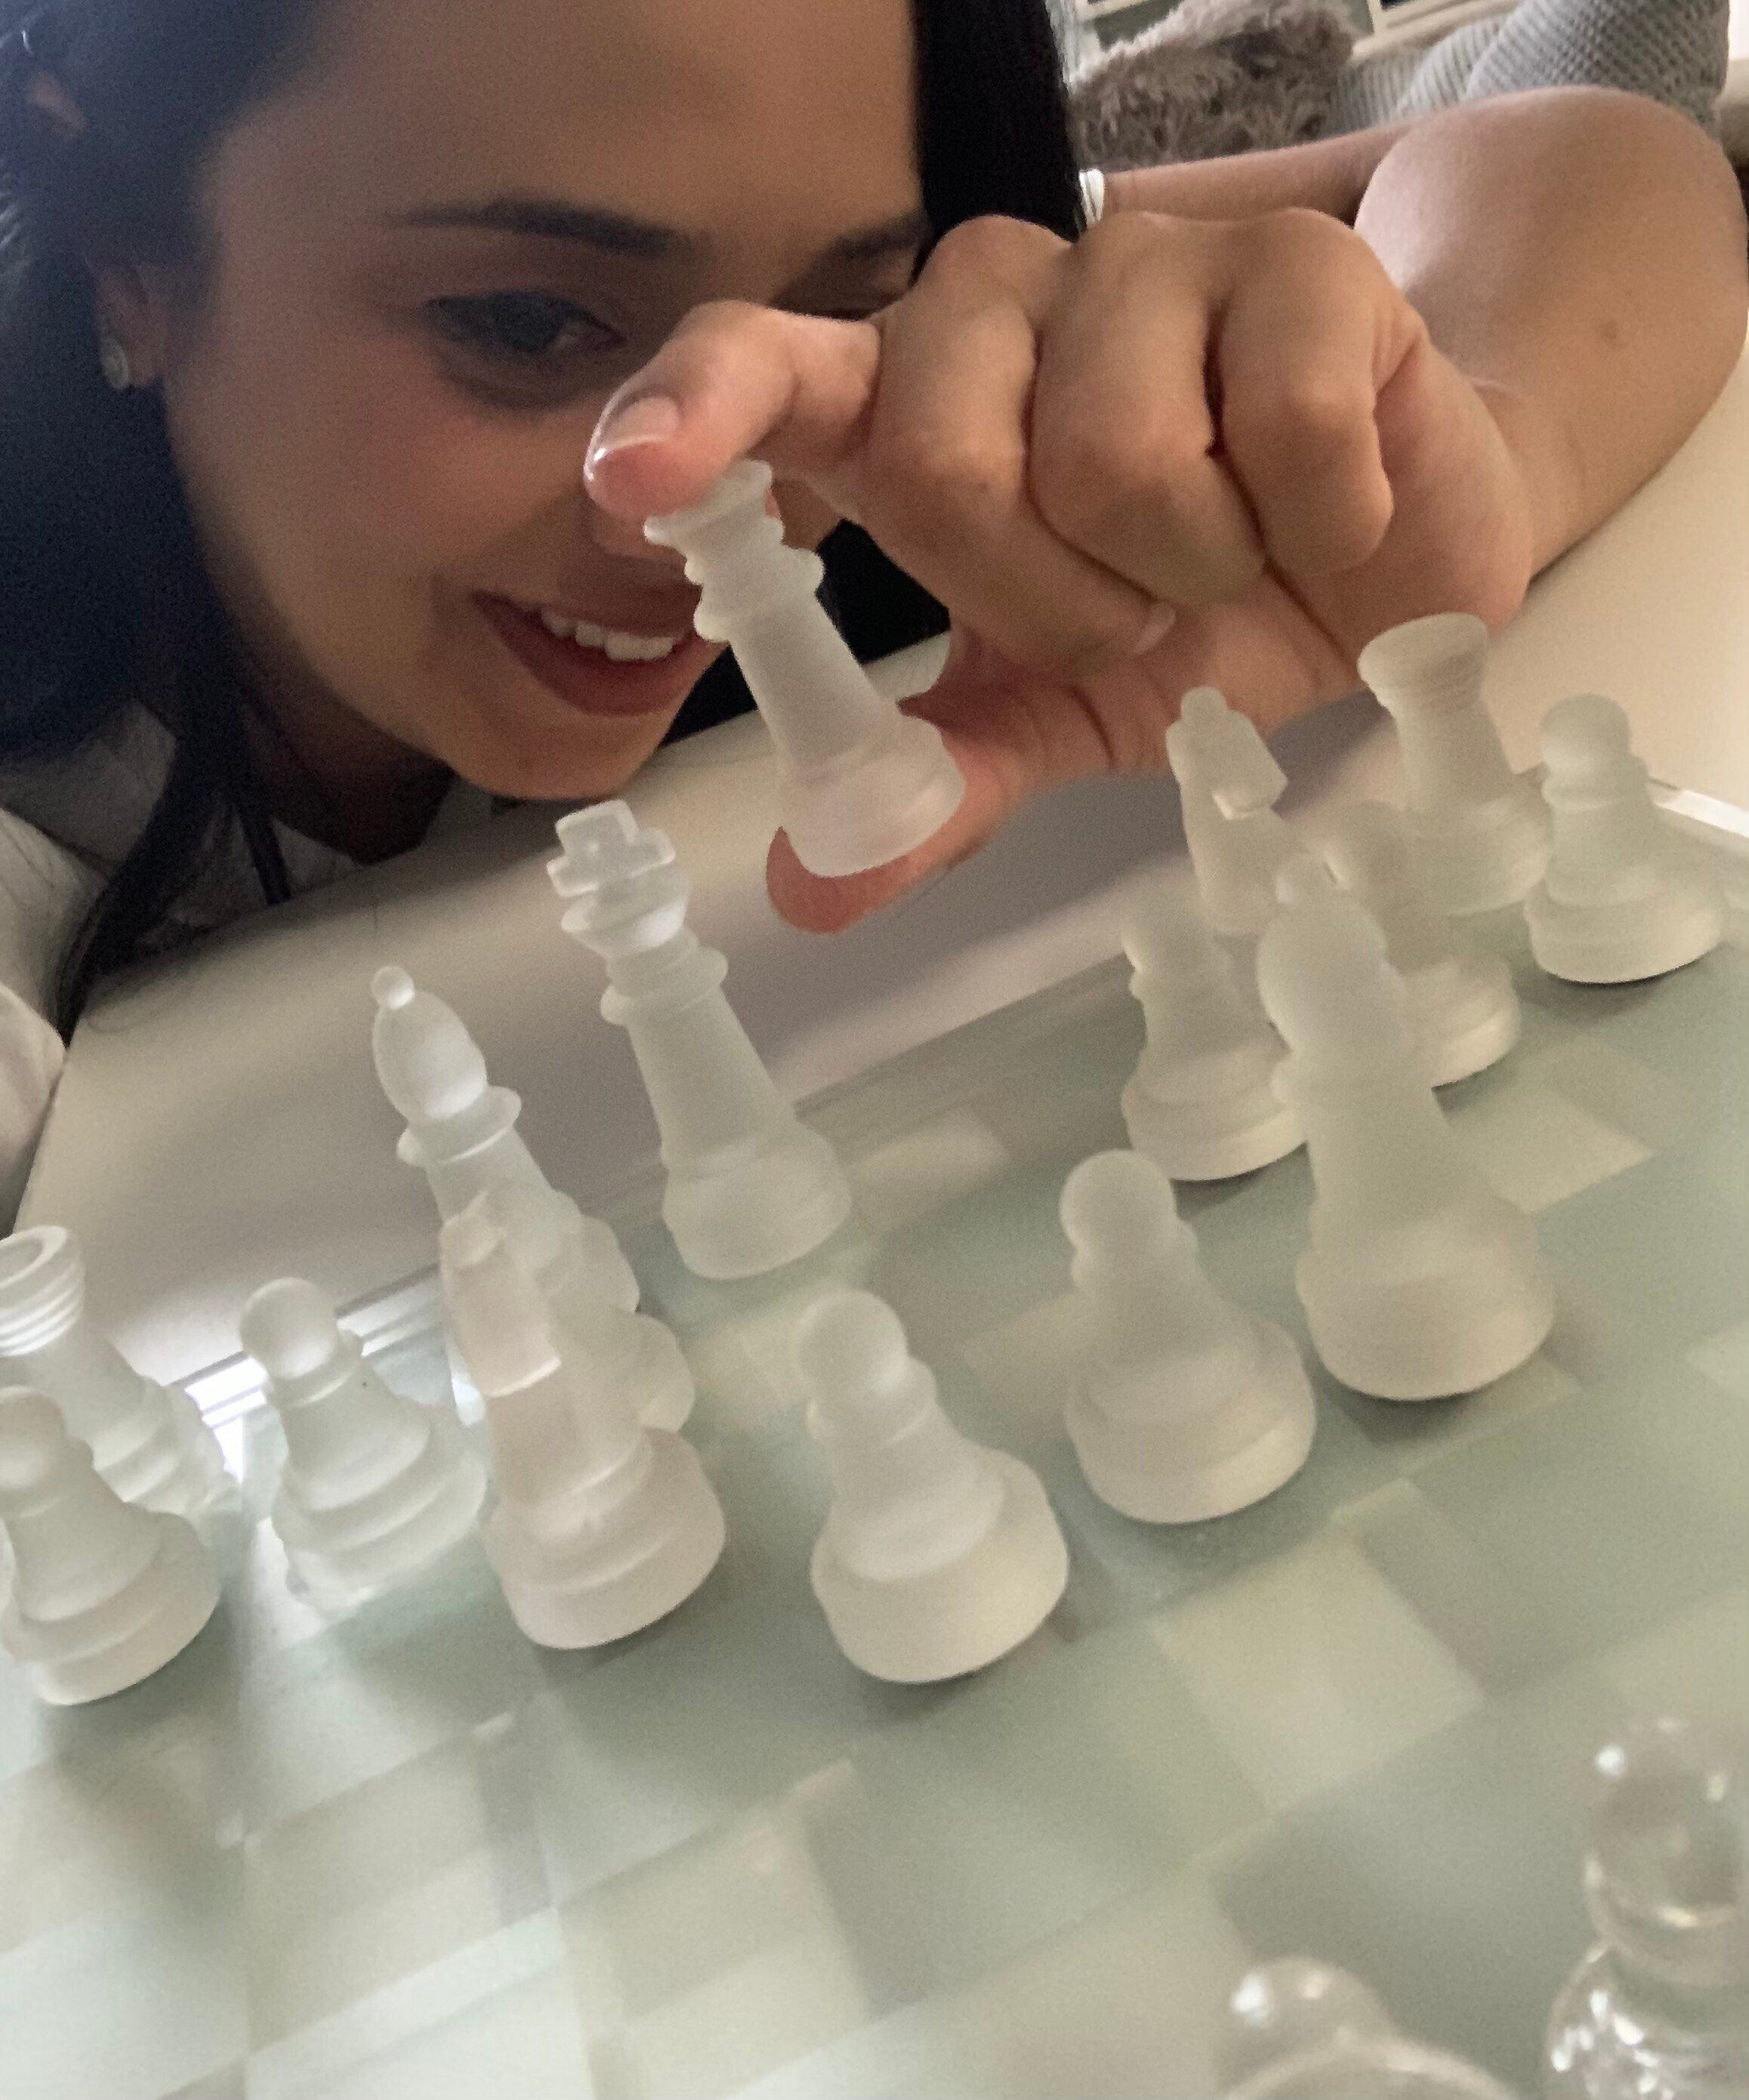 Enxadristas da vida real: assim como em O Gambito da Rainha, conheça os  alunos que representarão o Brasil no primeiro Mundial Escolar de Xadrez  Online - Popular Mais